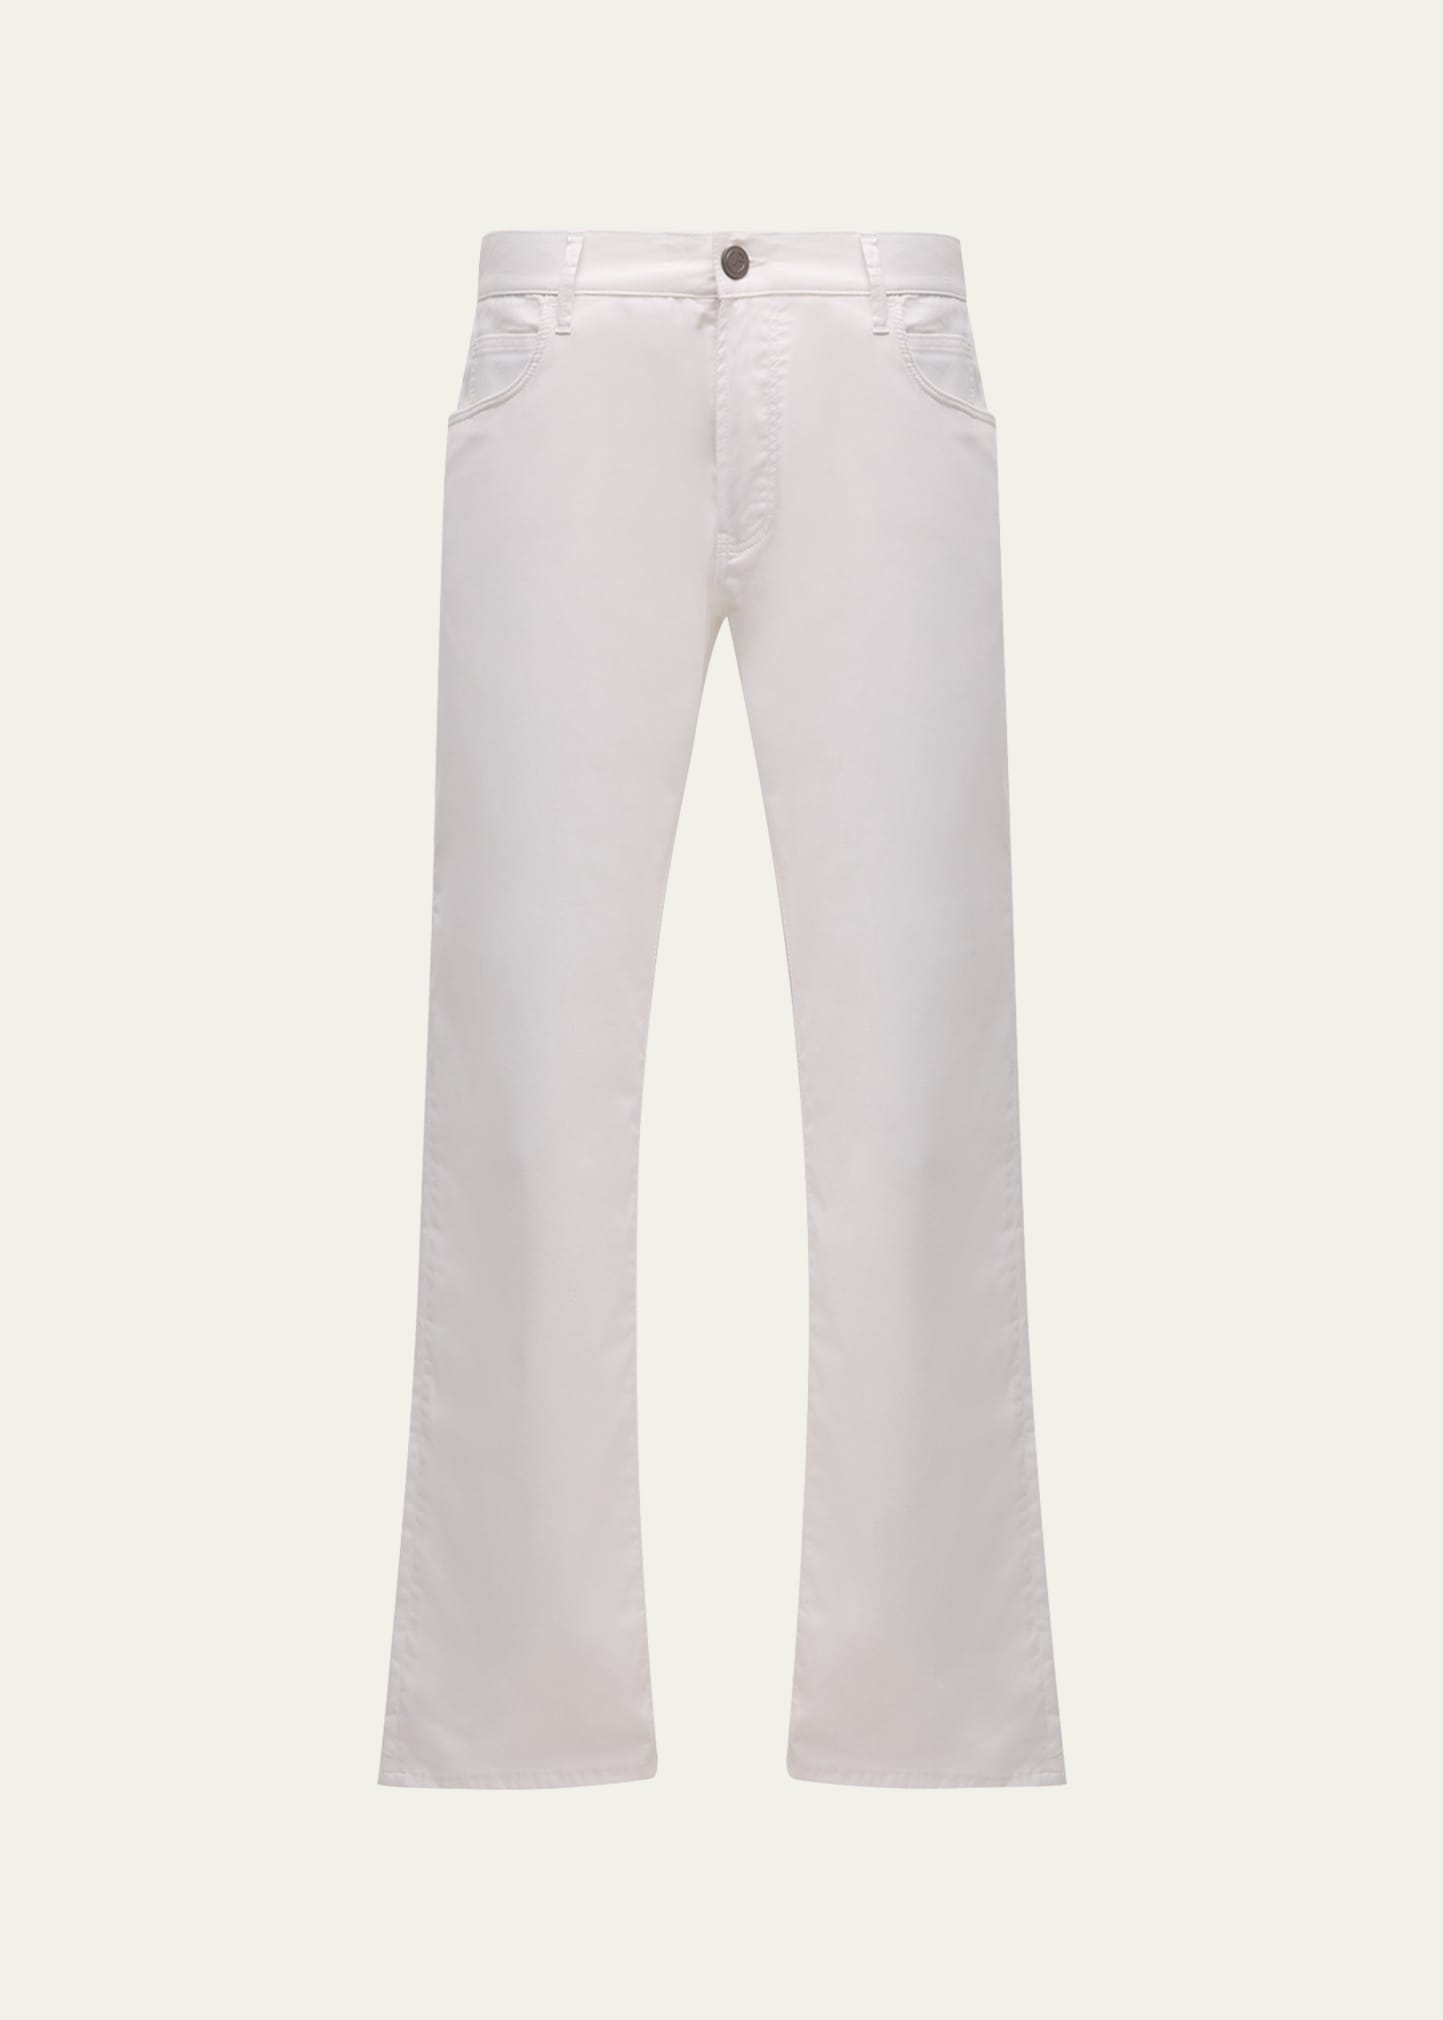 Giorgio Armani Men's Cotton-silk Stretch Pants In White